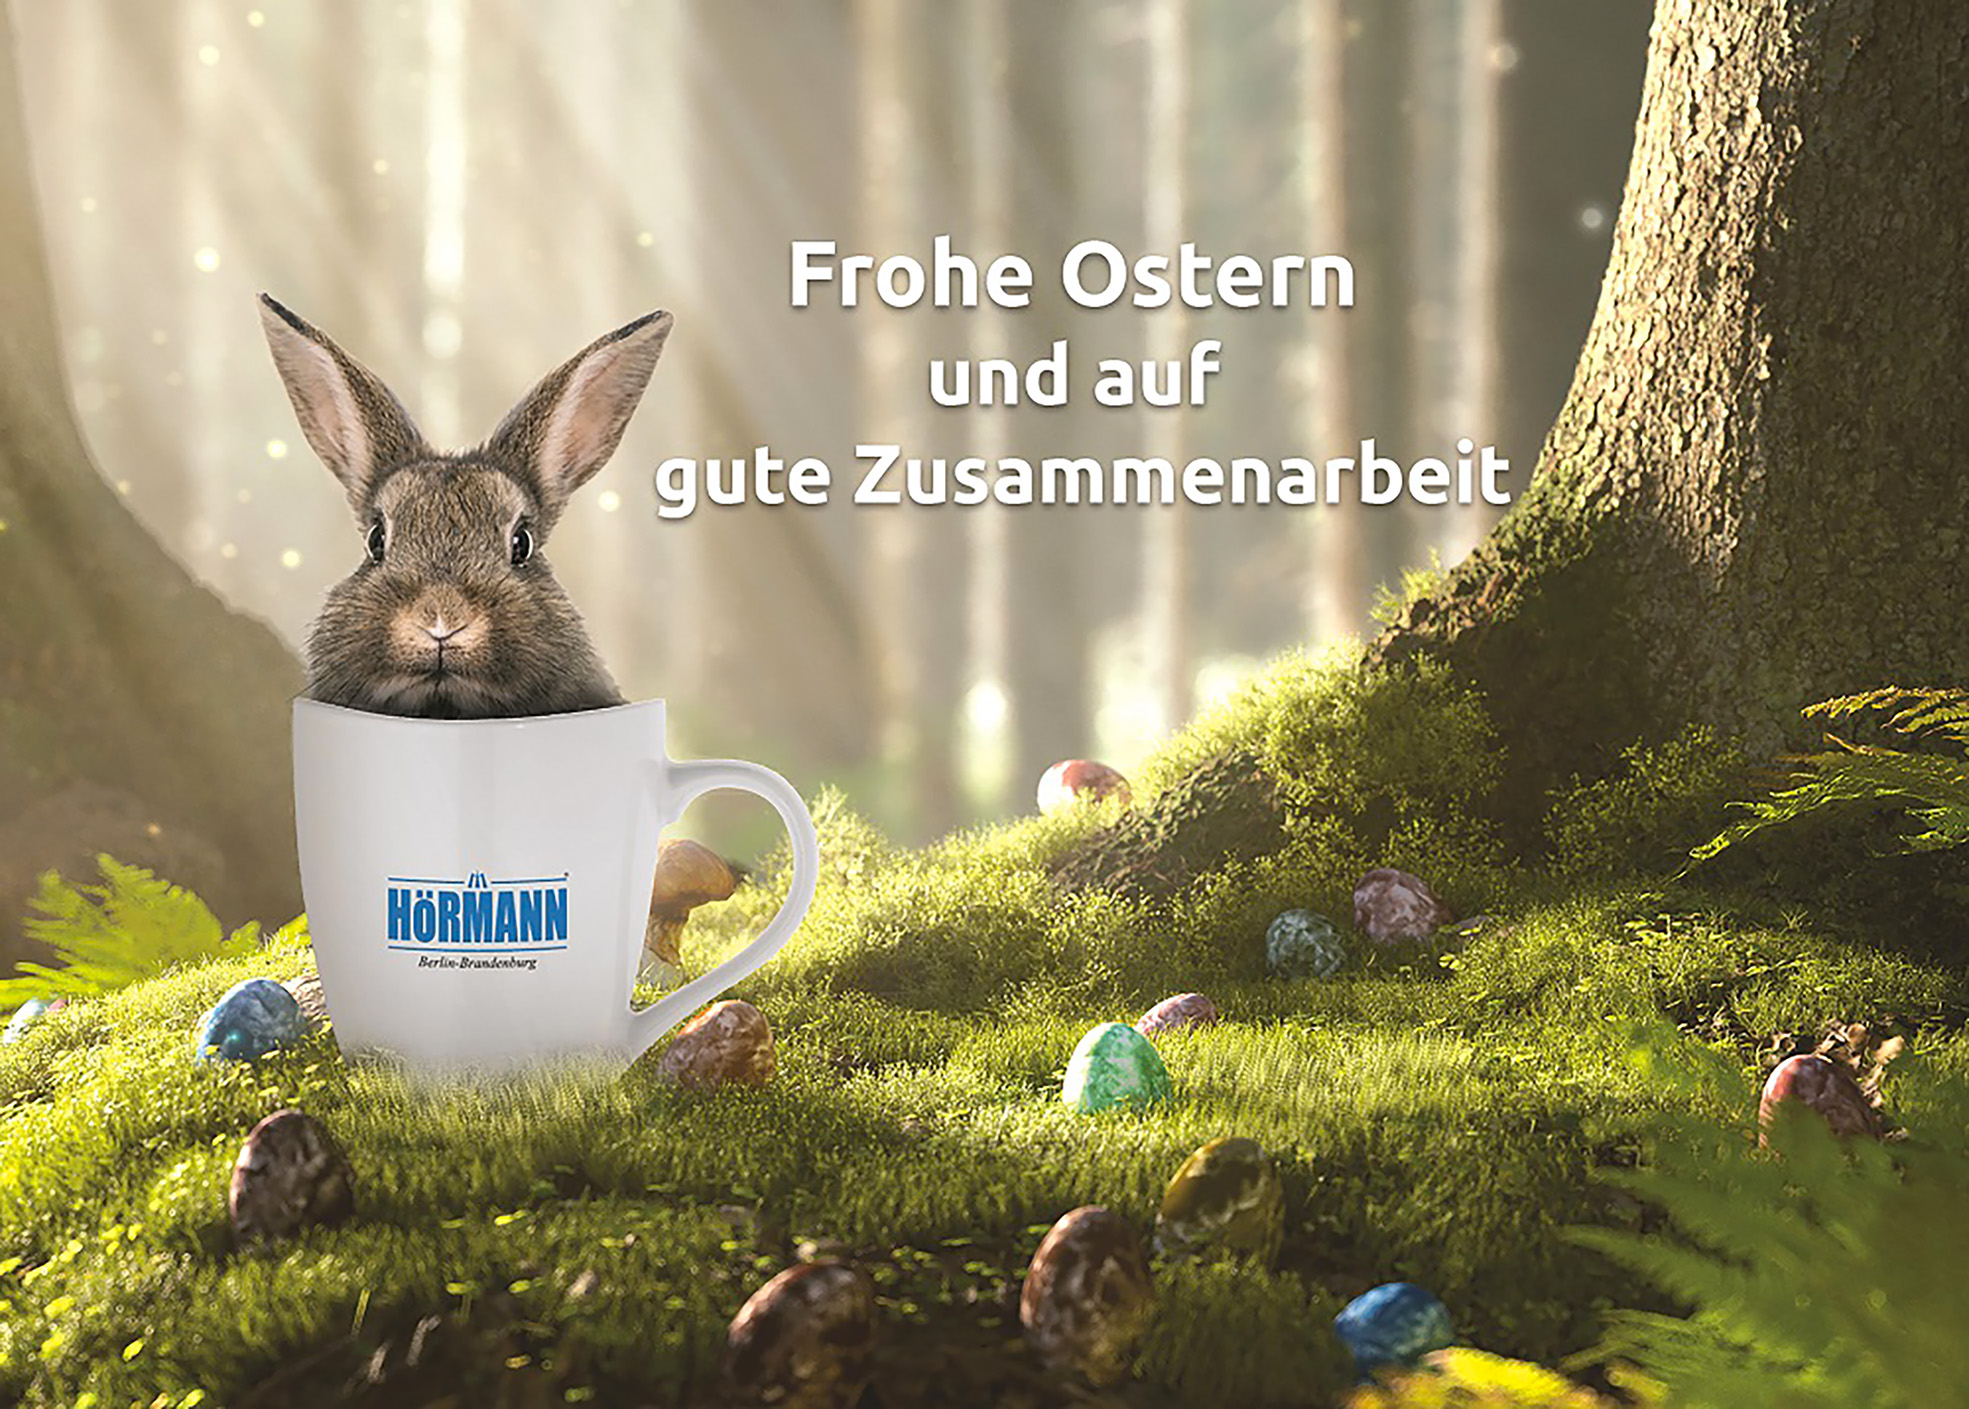 Hörmann wünscht Ihnen frohe Ostern